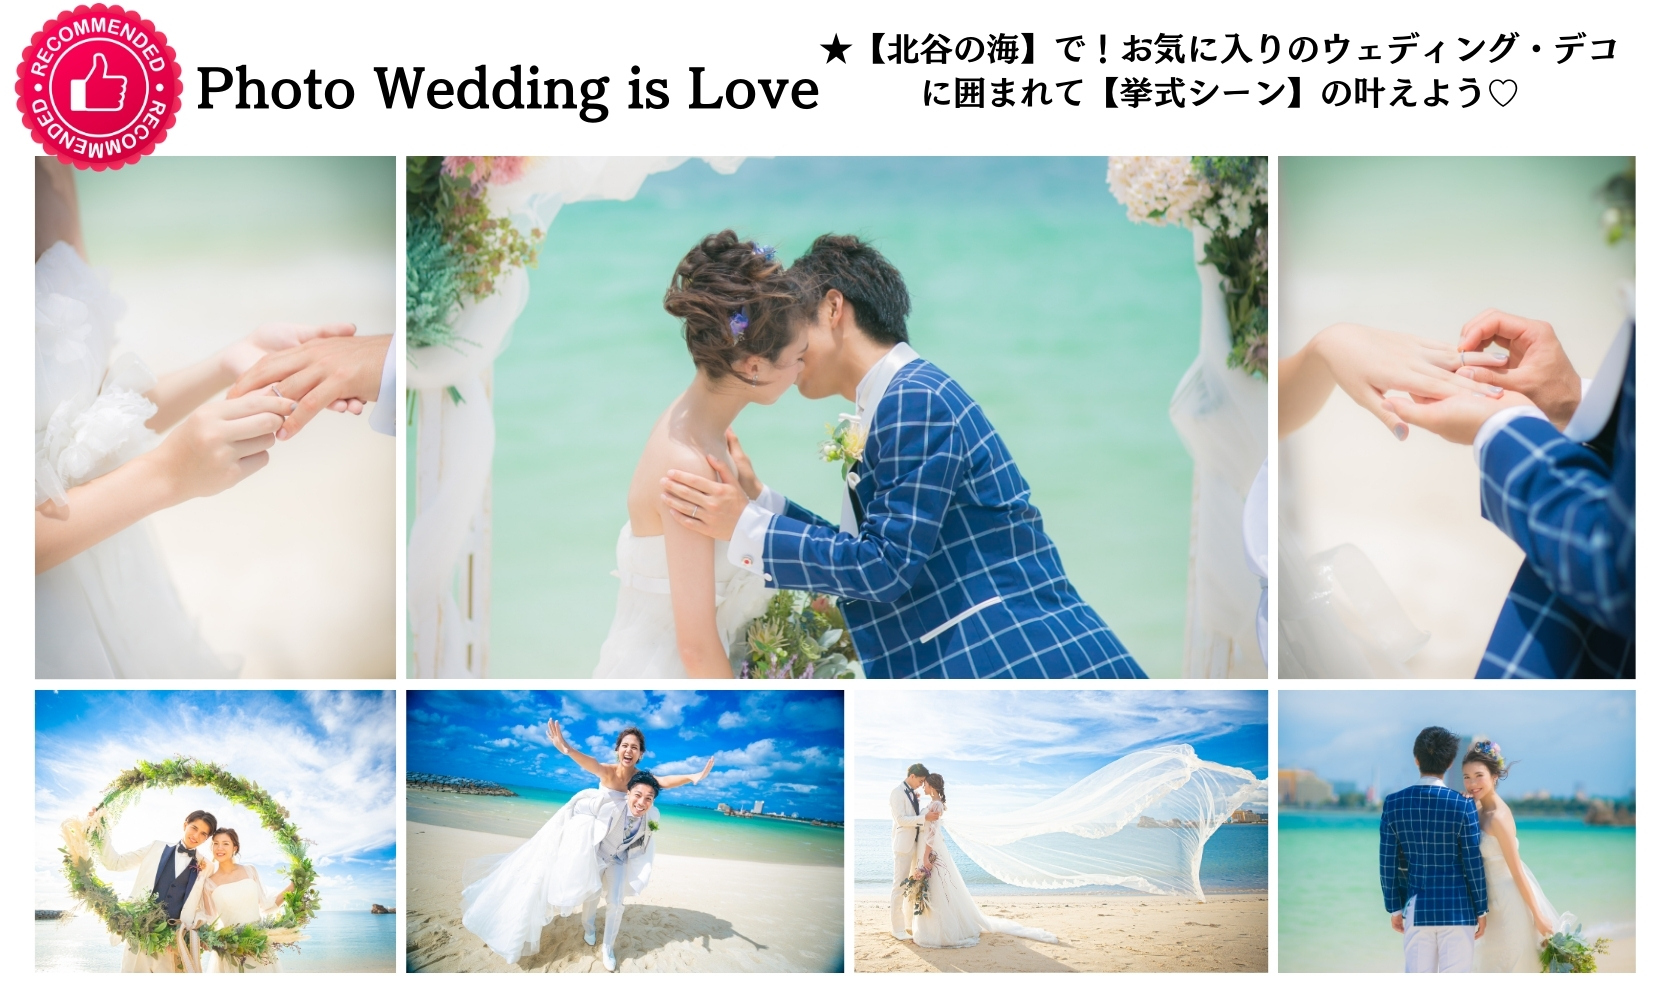 Chatan [Araha Beach location & beach wedding scene]